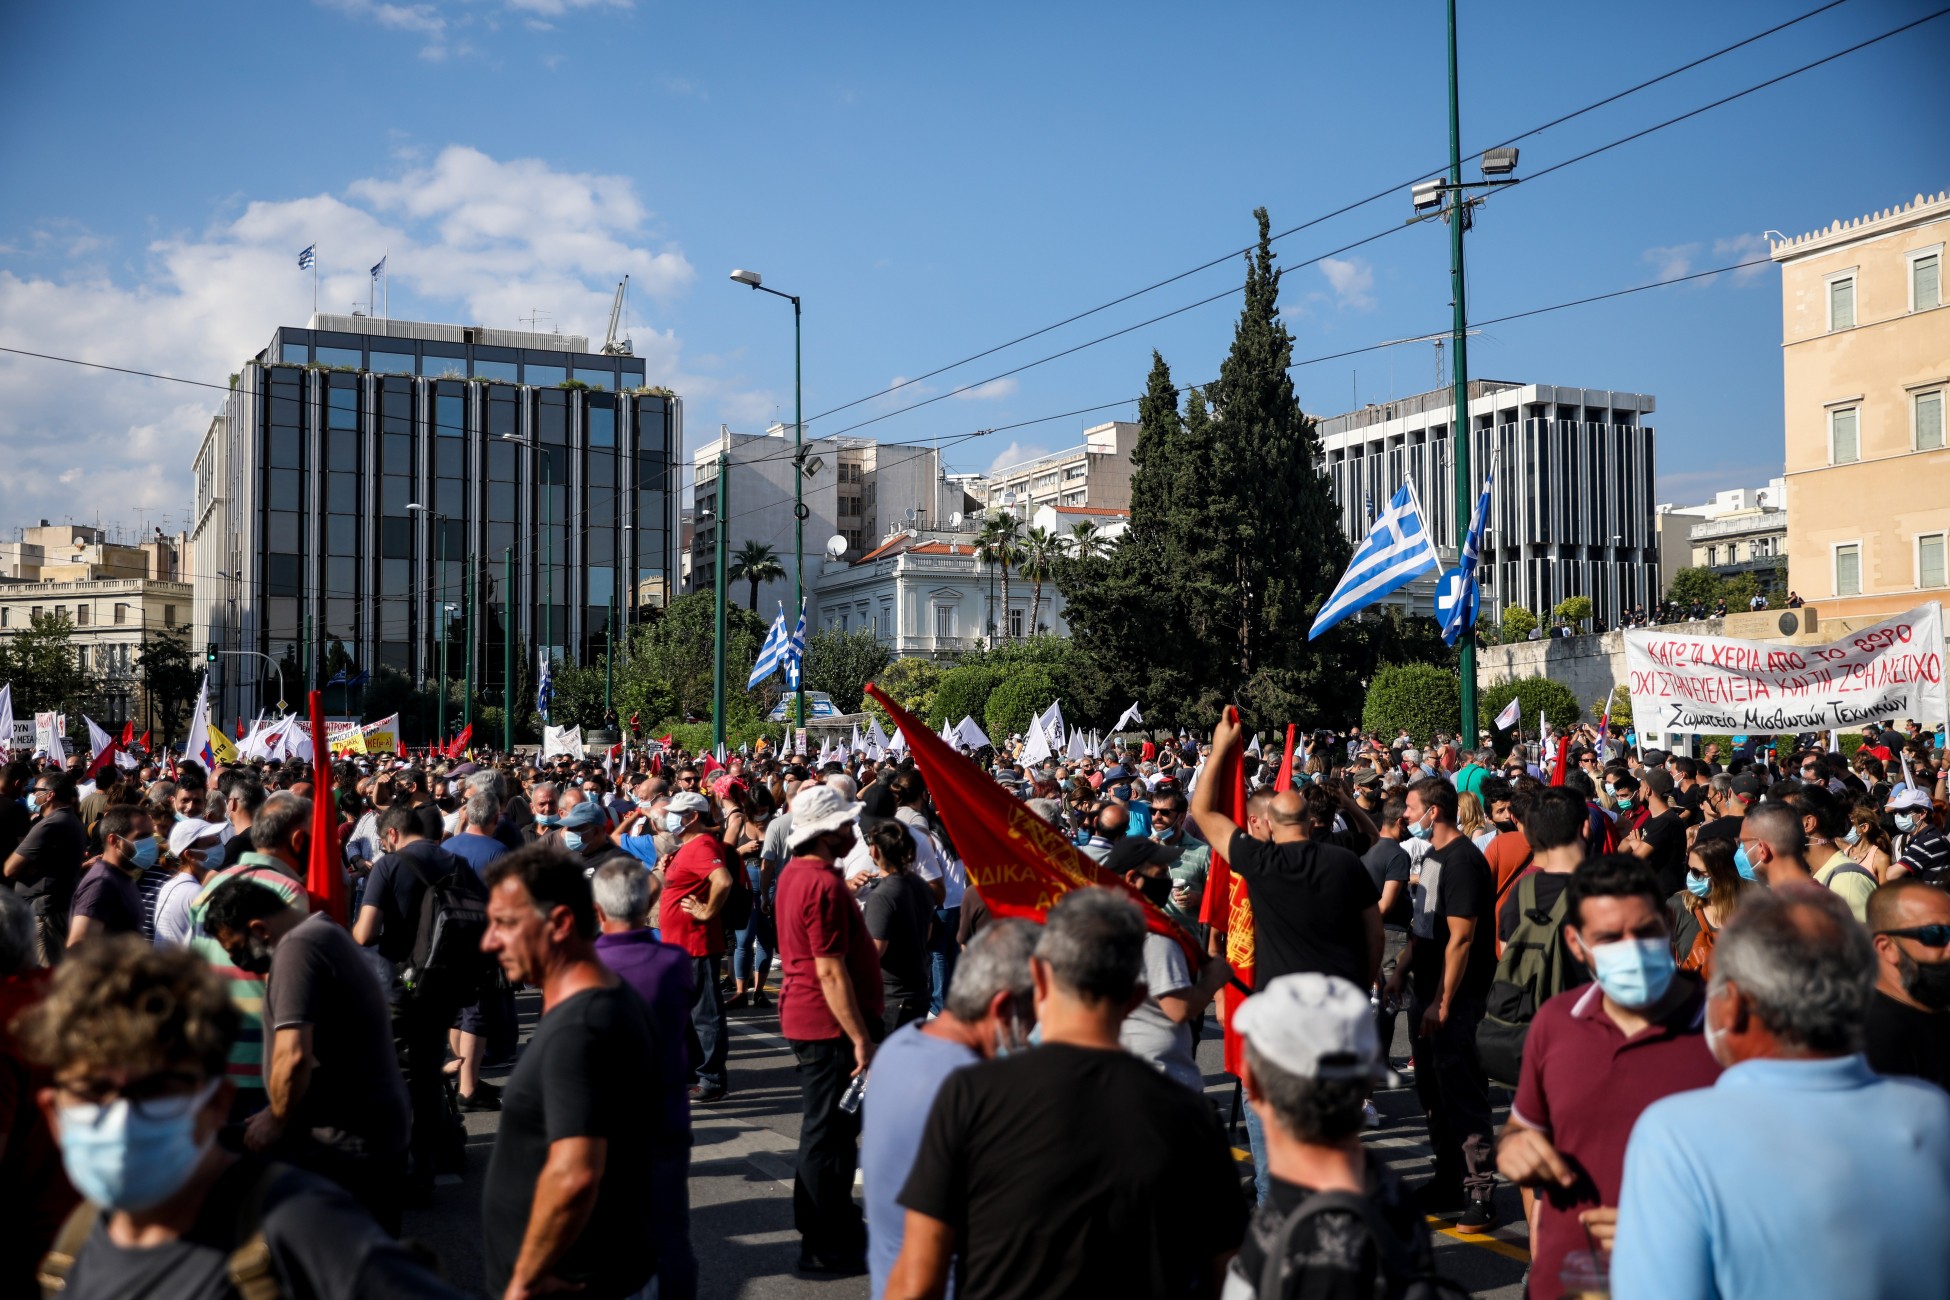 «Τύφλα» να έχει η Β.Κορέα: Δεν θα μεταδοθούν εικόνες από την απεργία για να μην φανεί η οργή των Ελλήνων κατά της κυβέρνησης